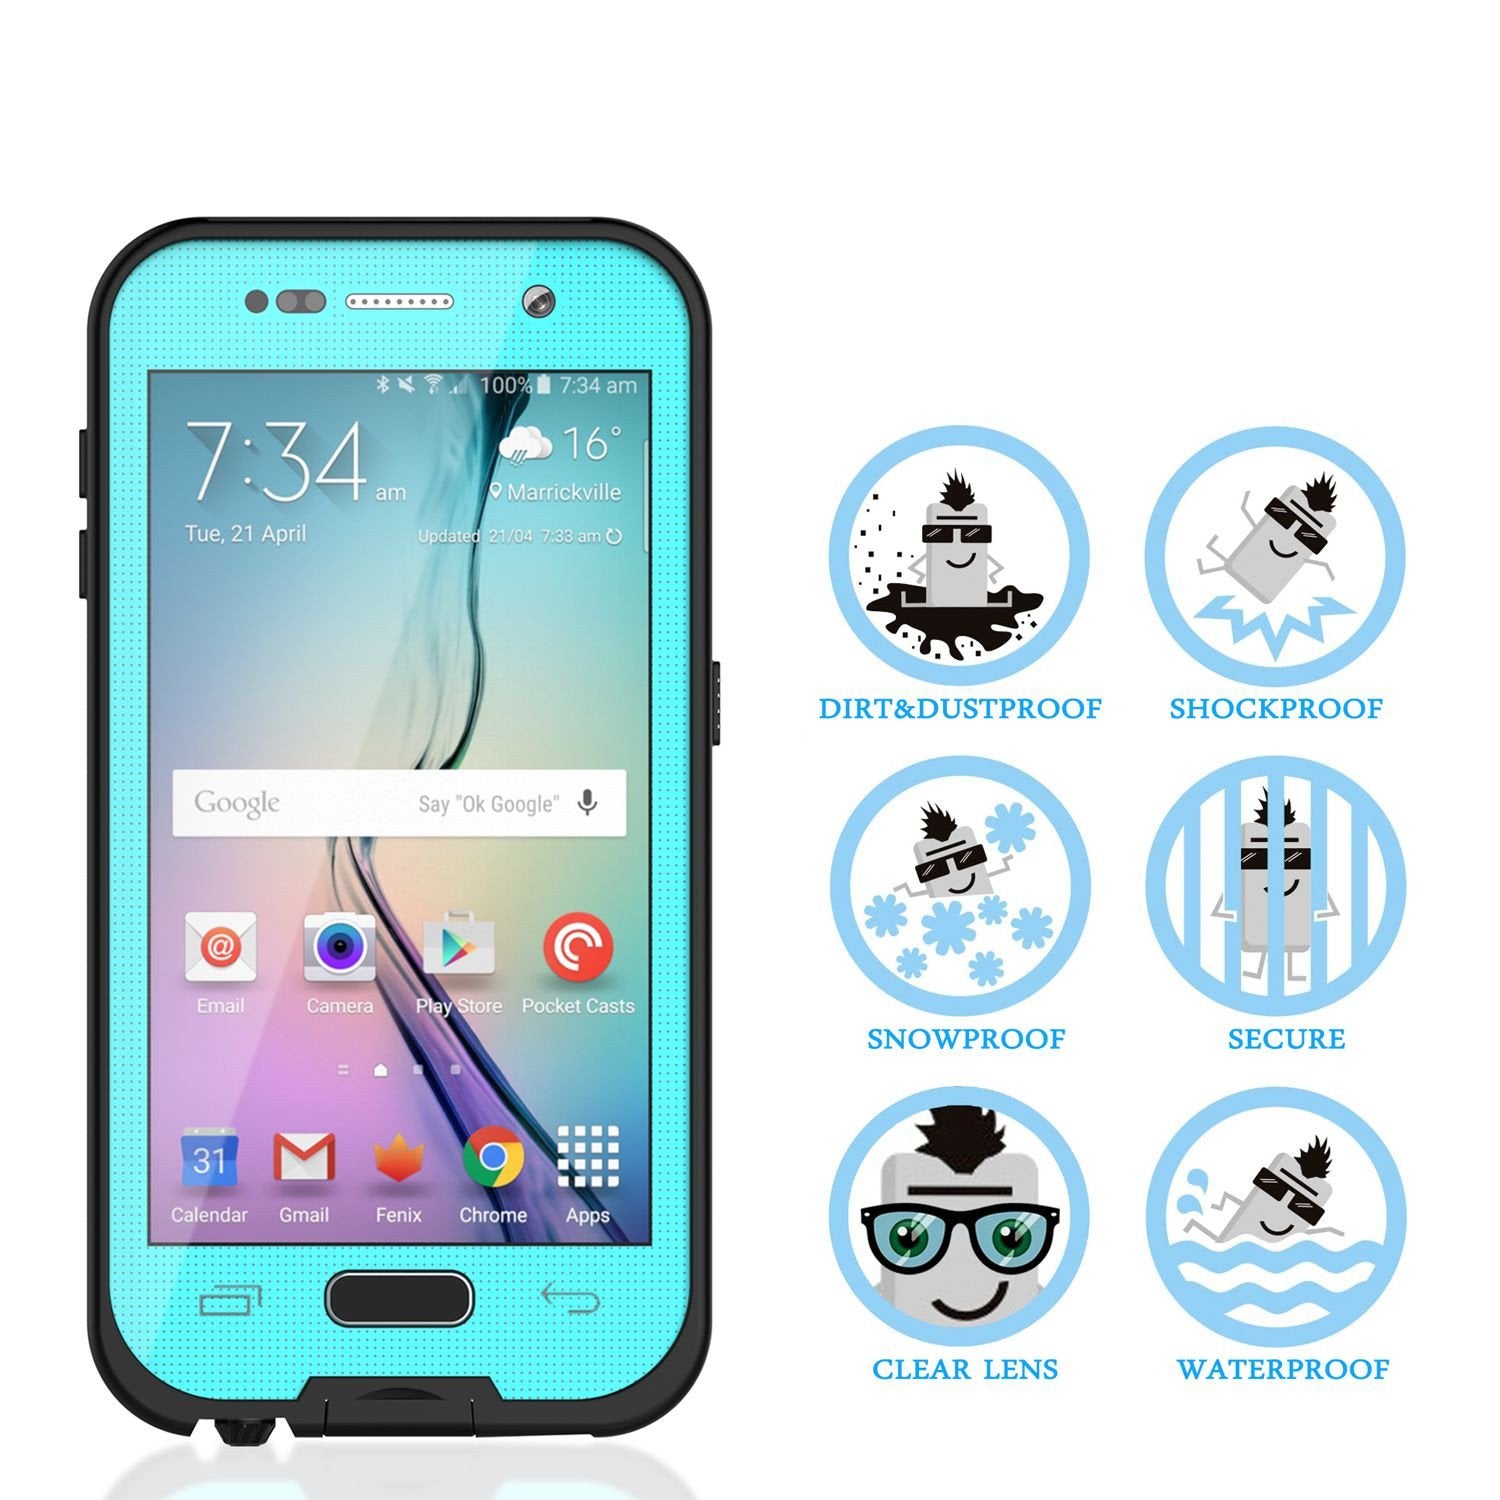 Galaxy S6 Waterproof Case, Punkcase SpikeStar Teal Water/Shock/Dirt/Snow Proof | Lifetime Warranty